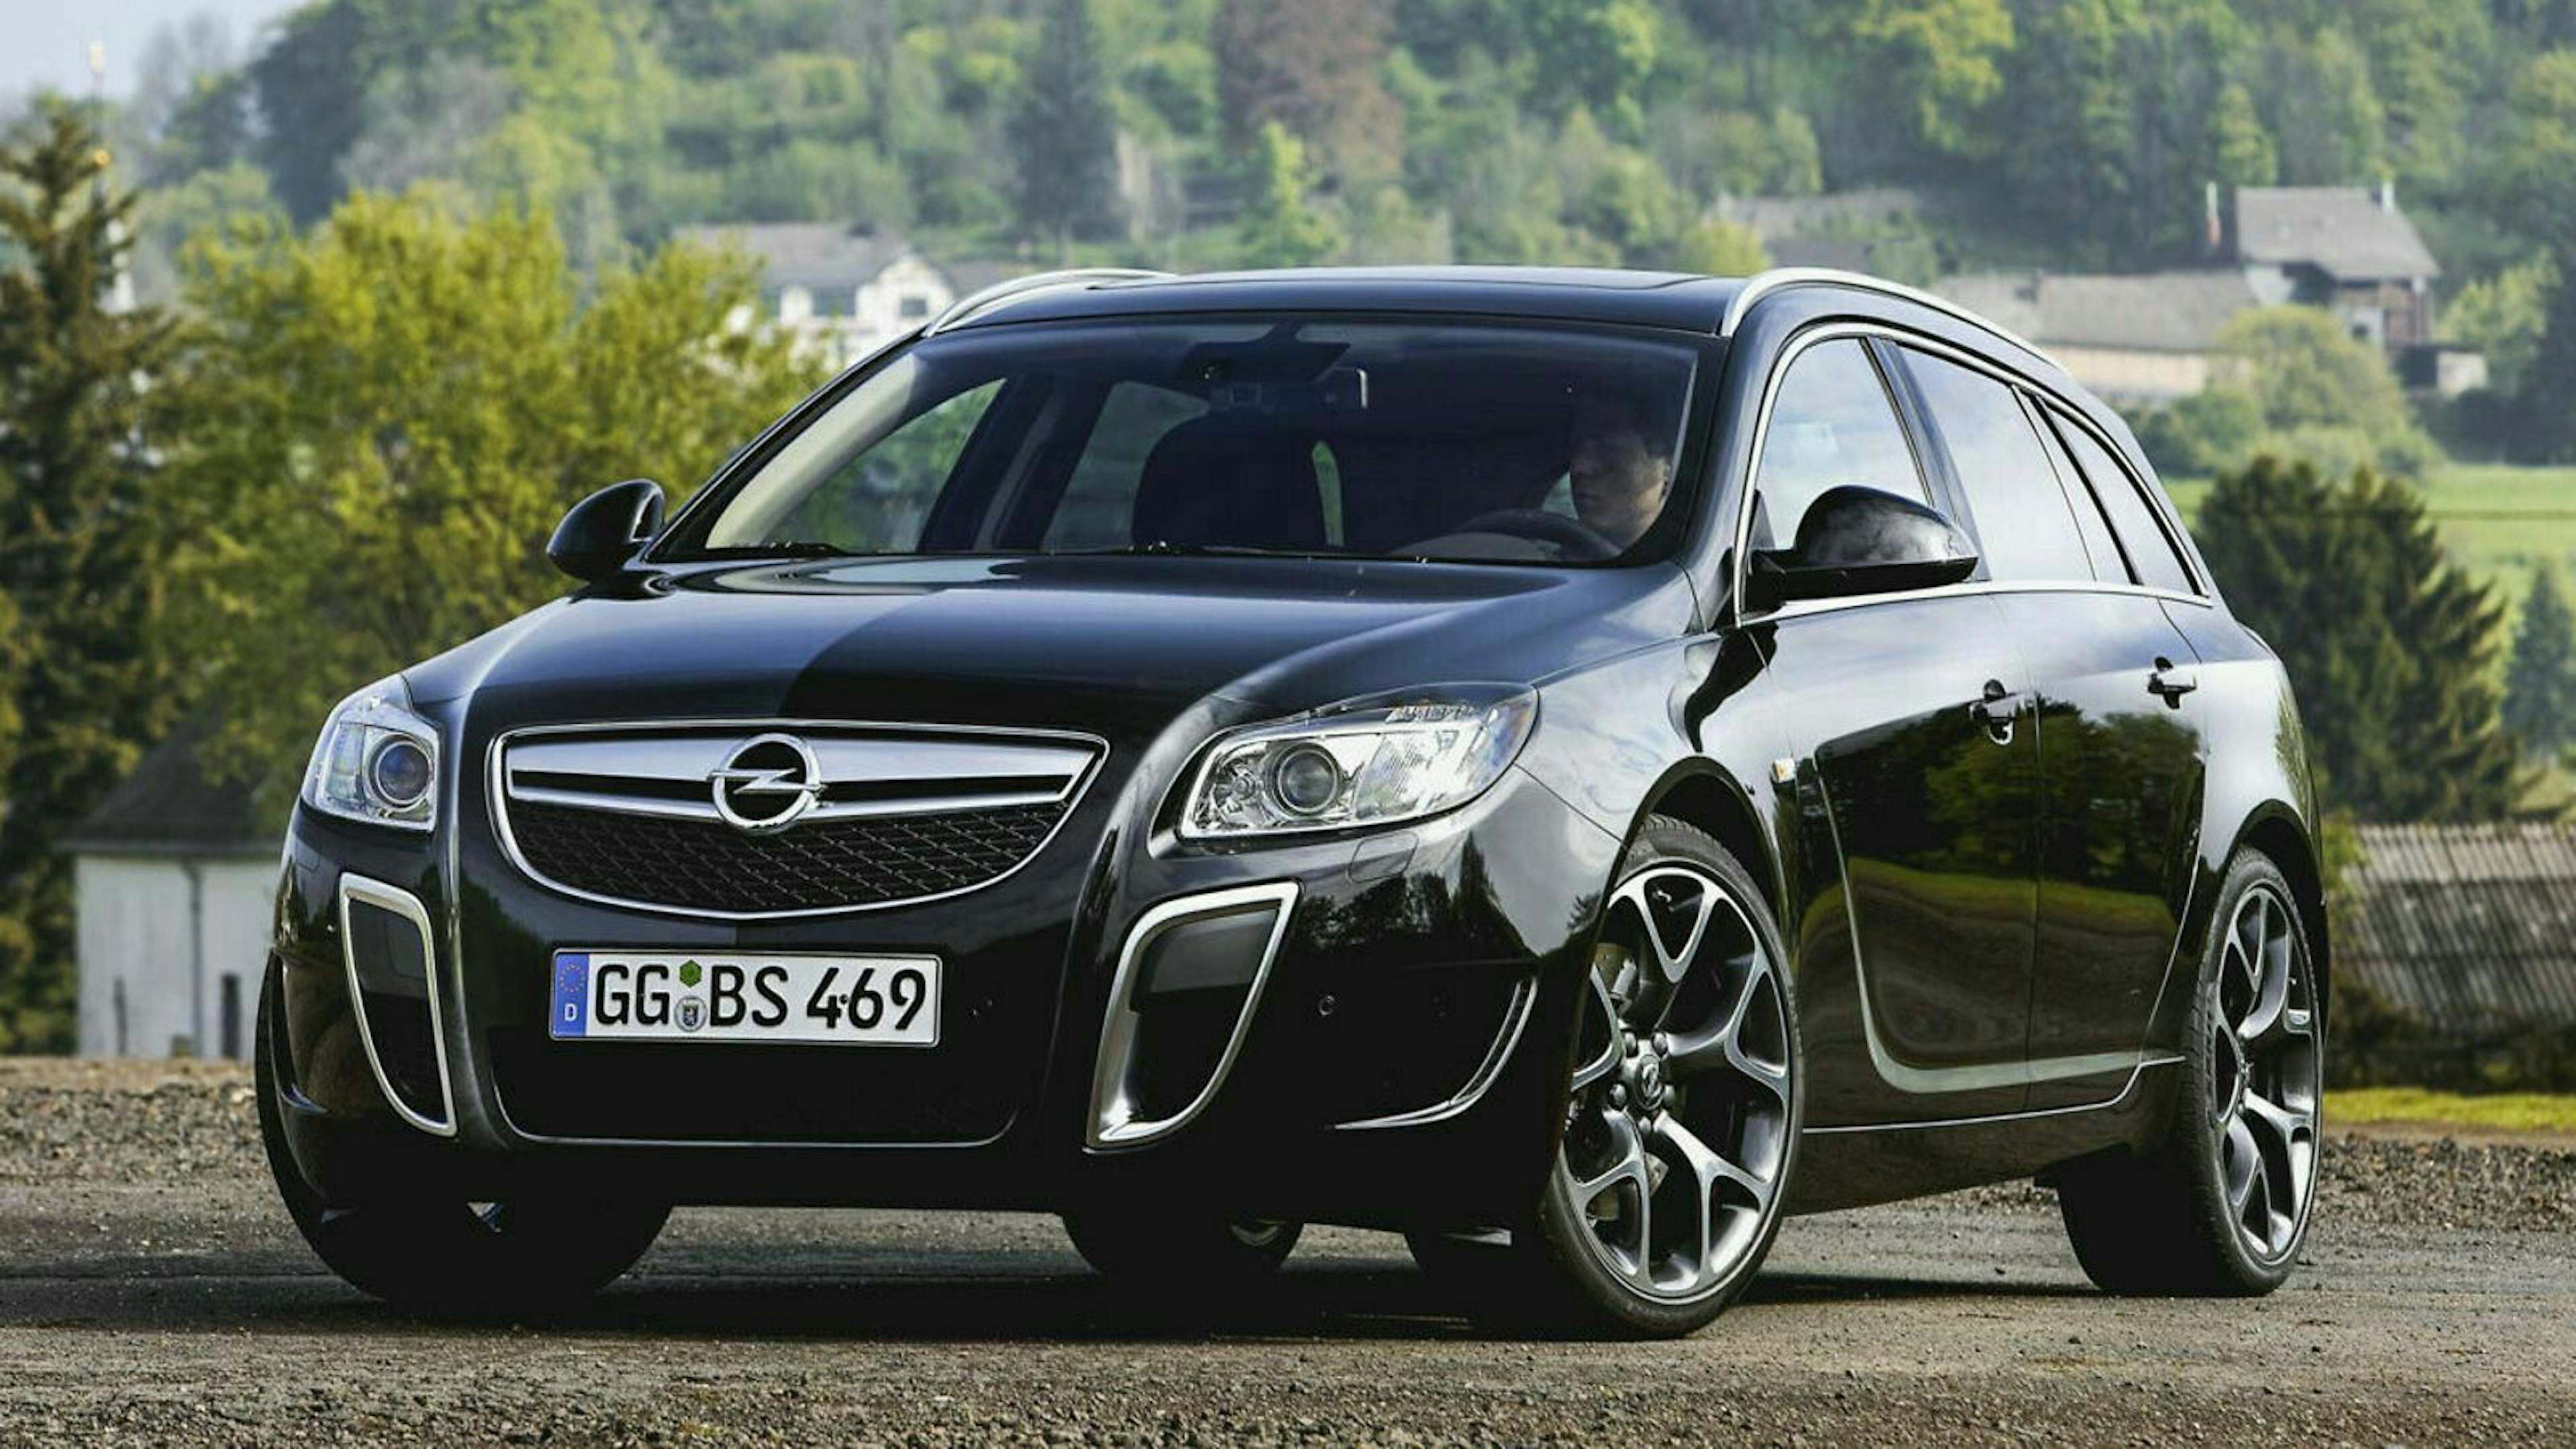 Den Insignia brachte Opel 2008 als Nachfolger des Vectra auf den Markt